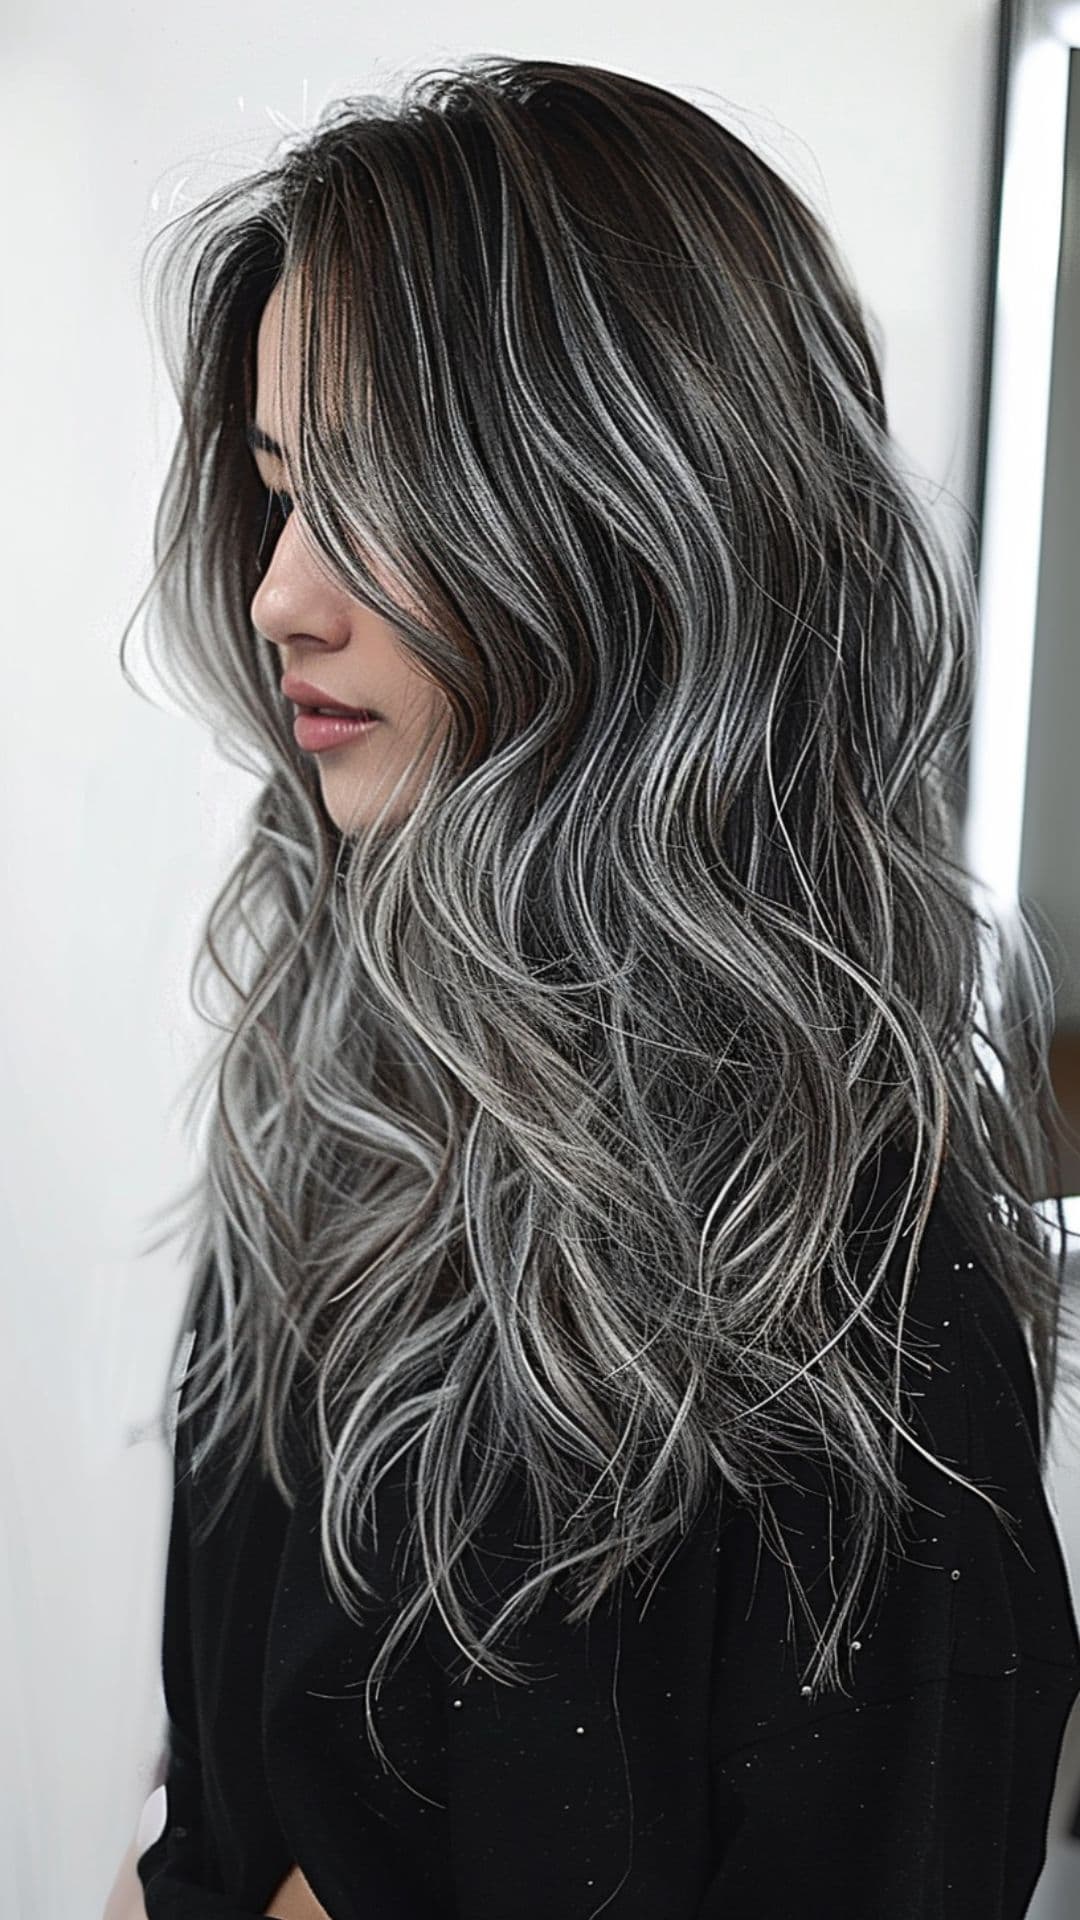 A woman modelling a gray silver balayage hair.